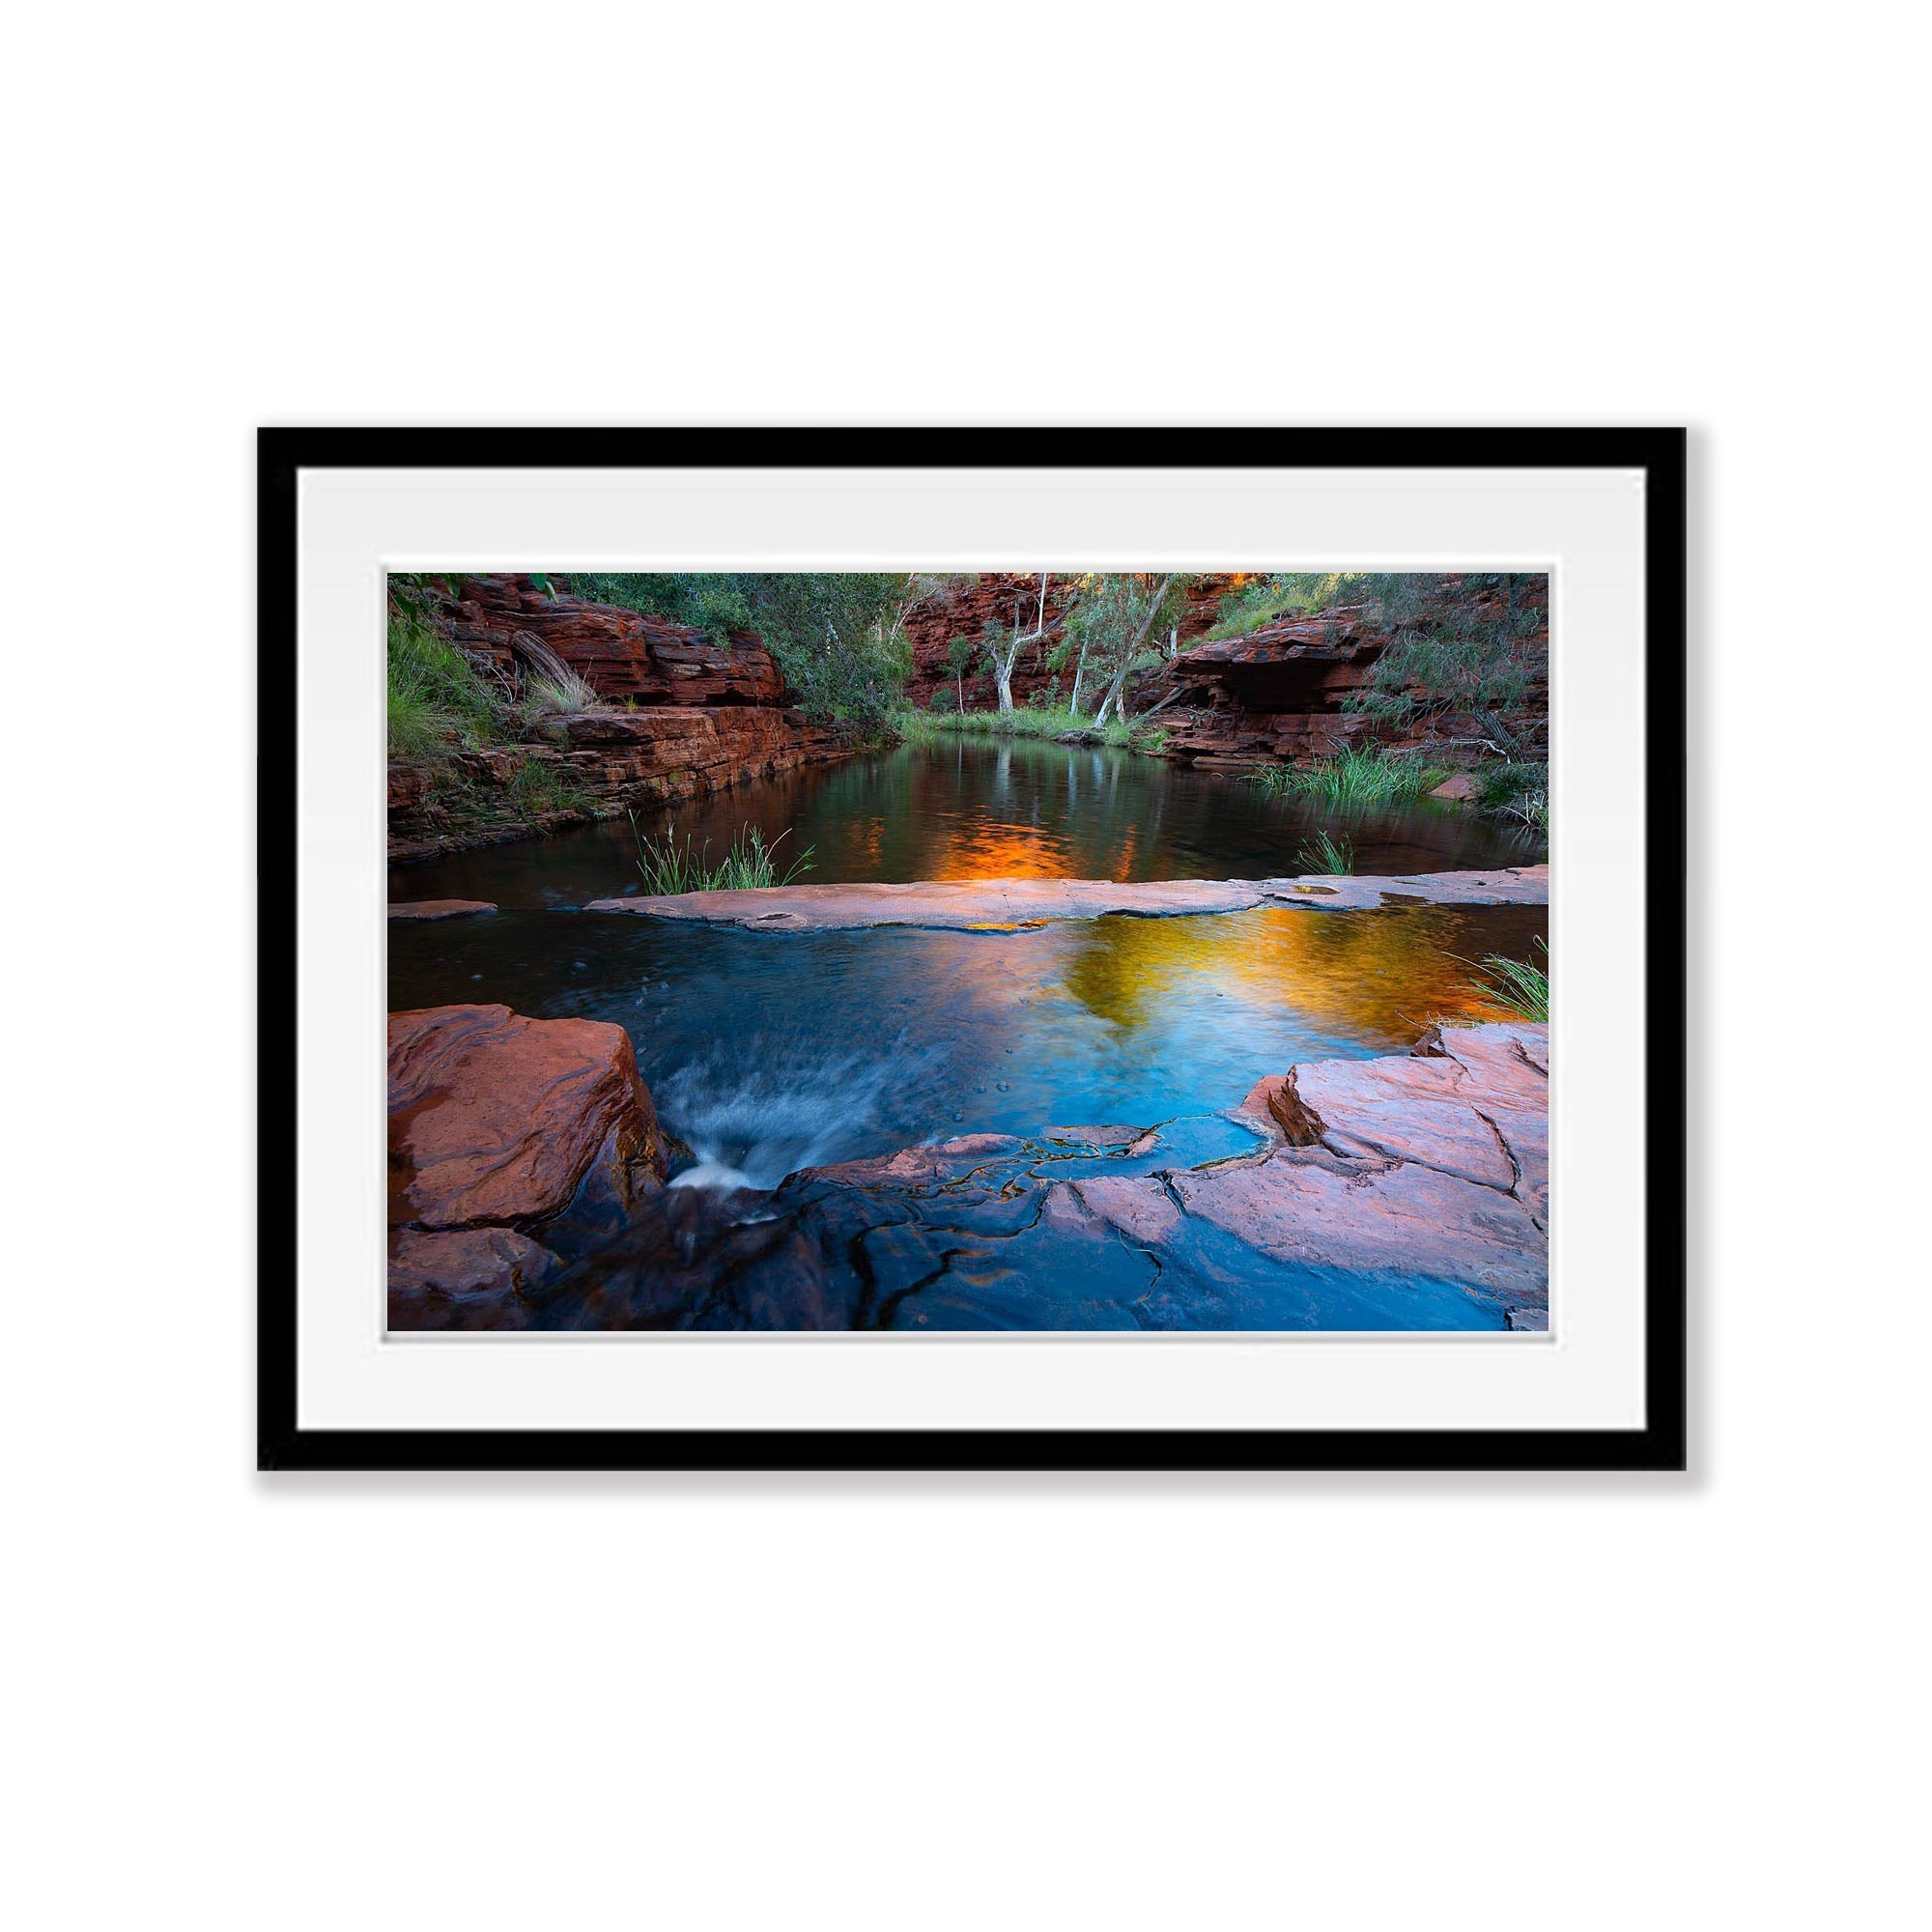 Early morning glow, Weano Gorge - Karijini, The Pilbara